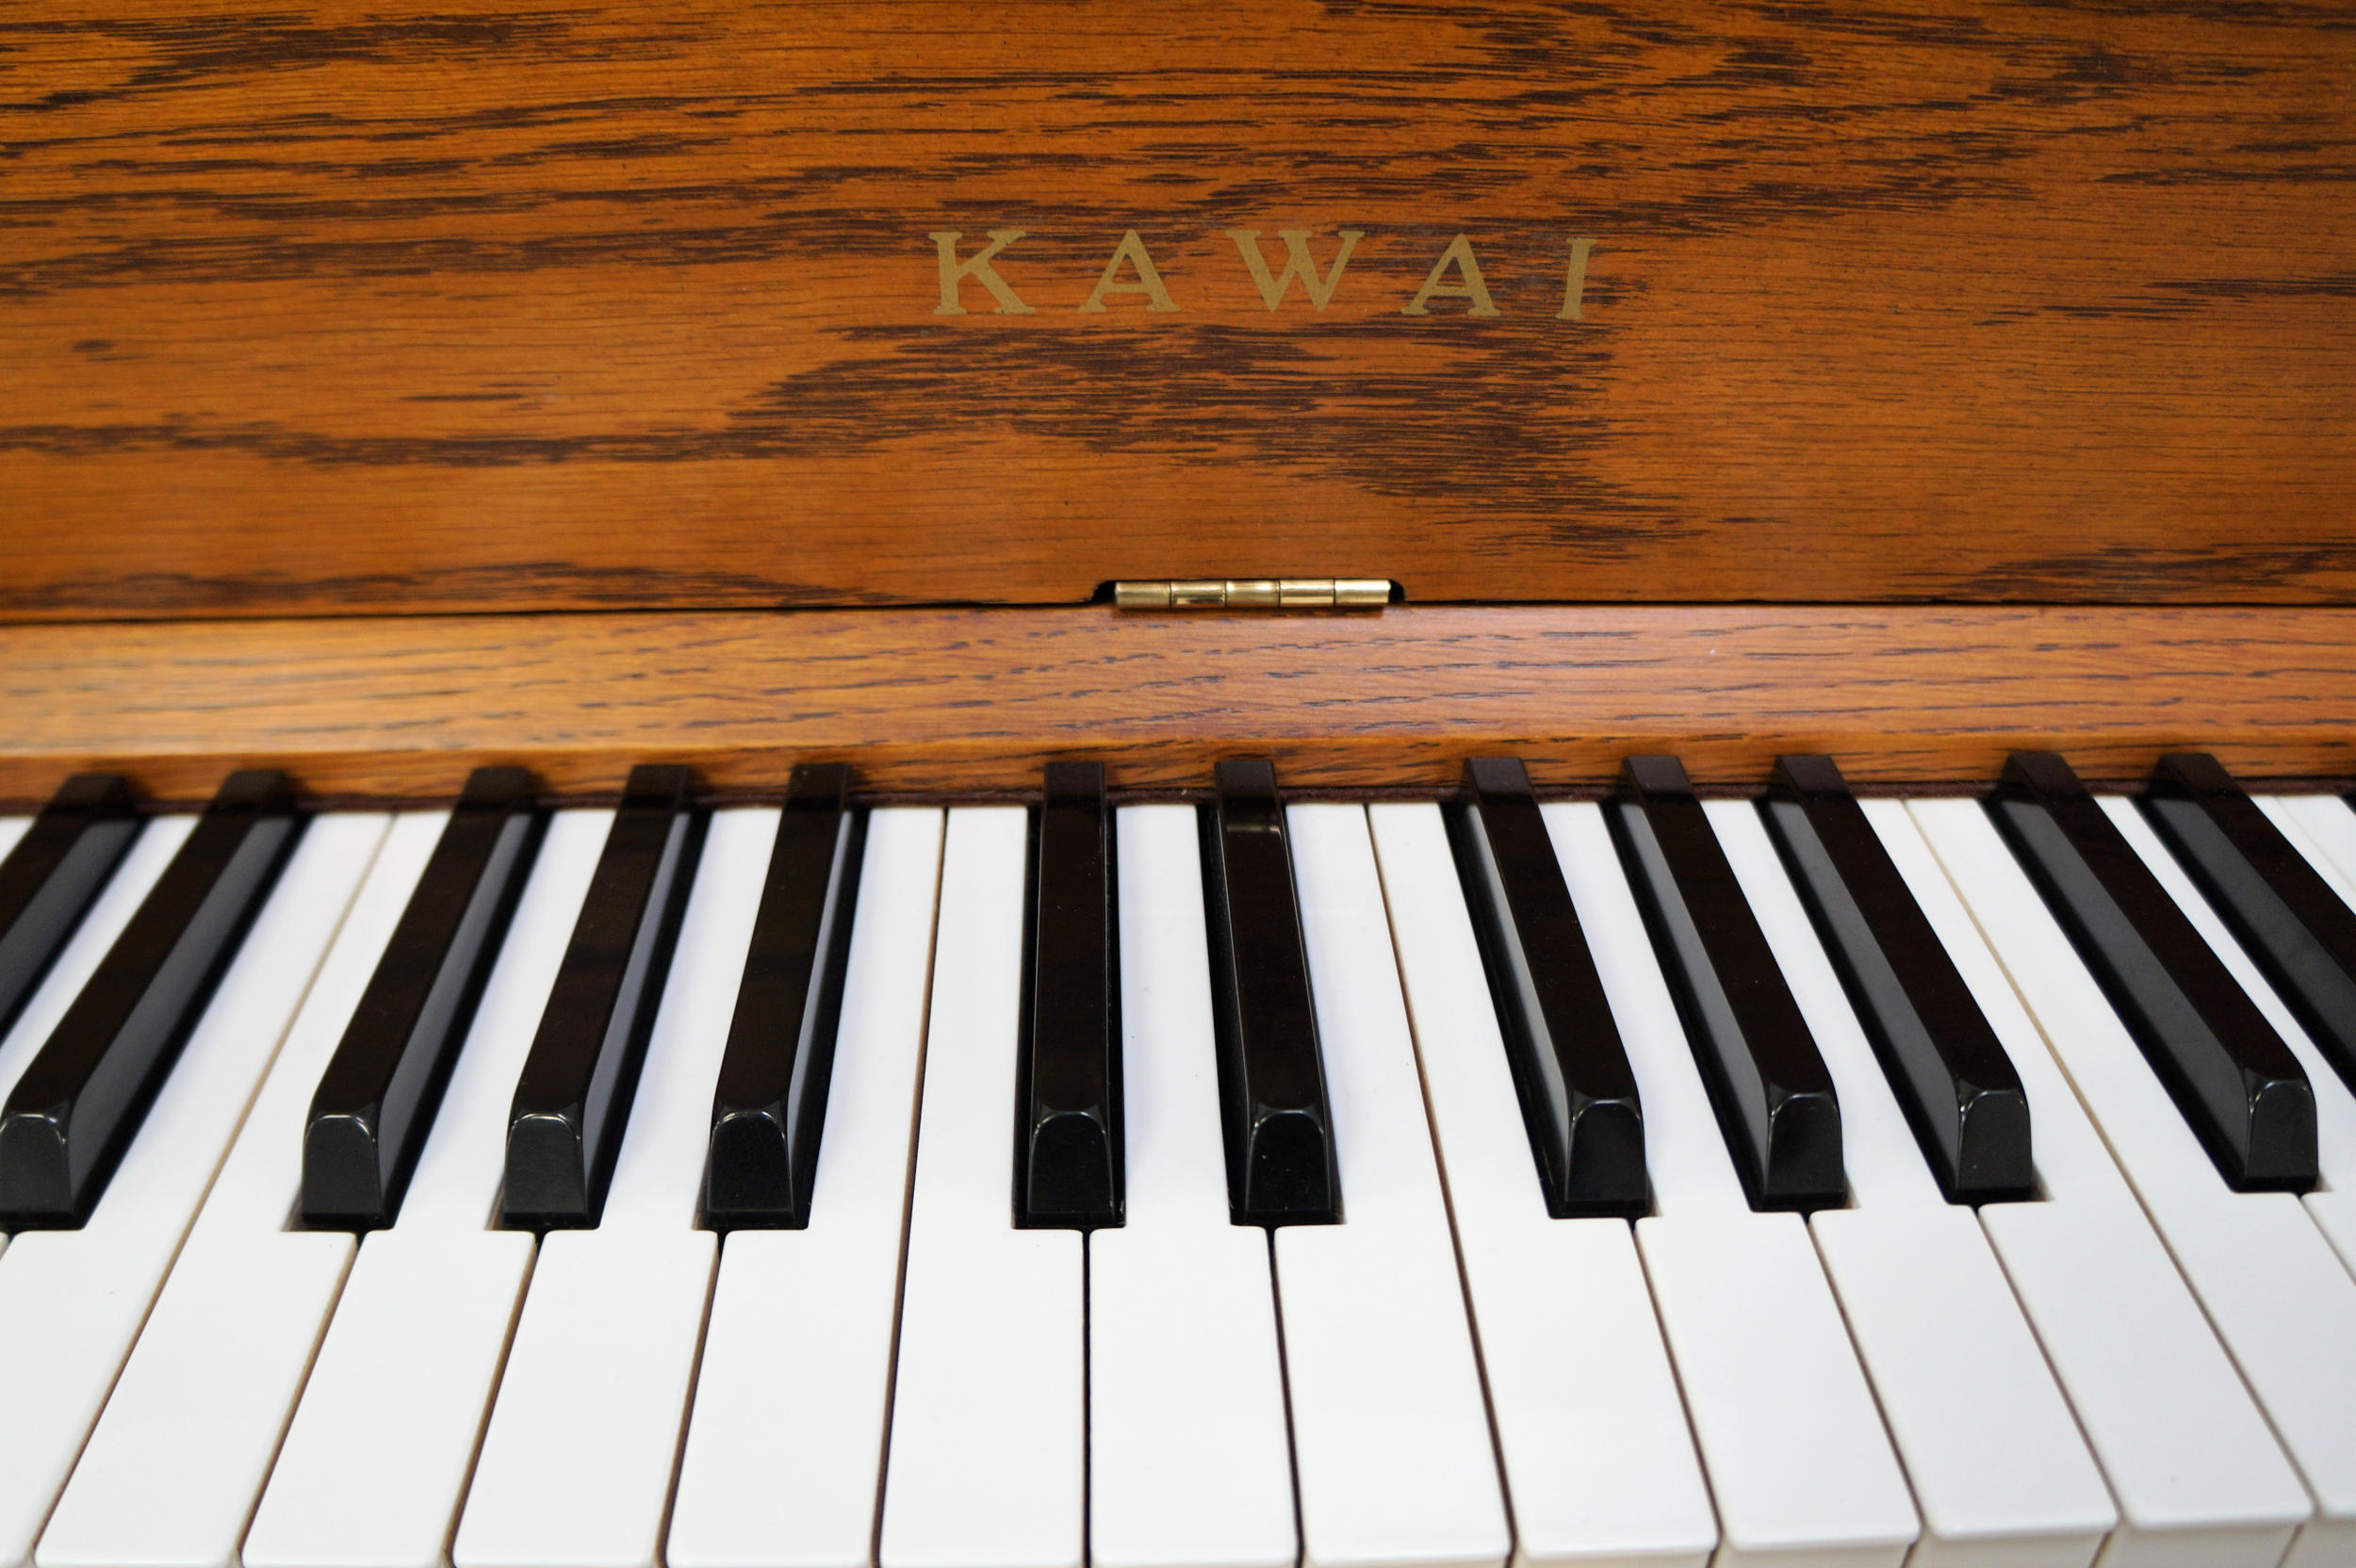 Kawai UST-7 Professional Upright Piano